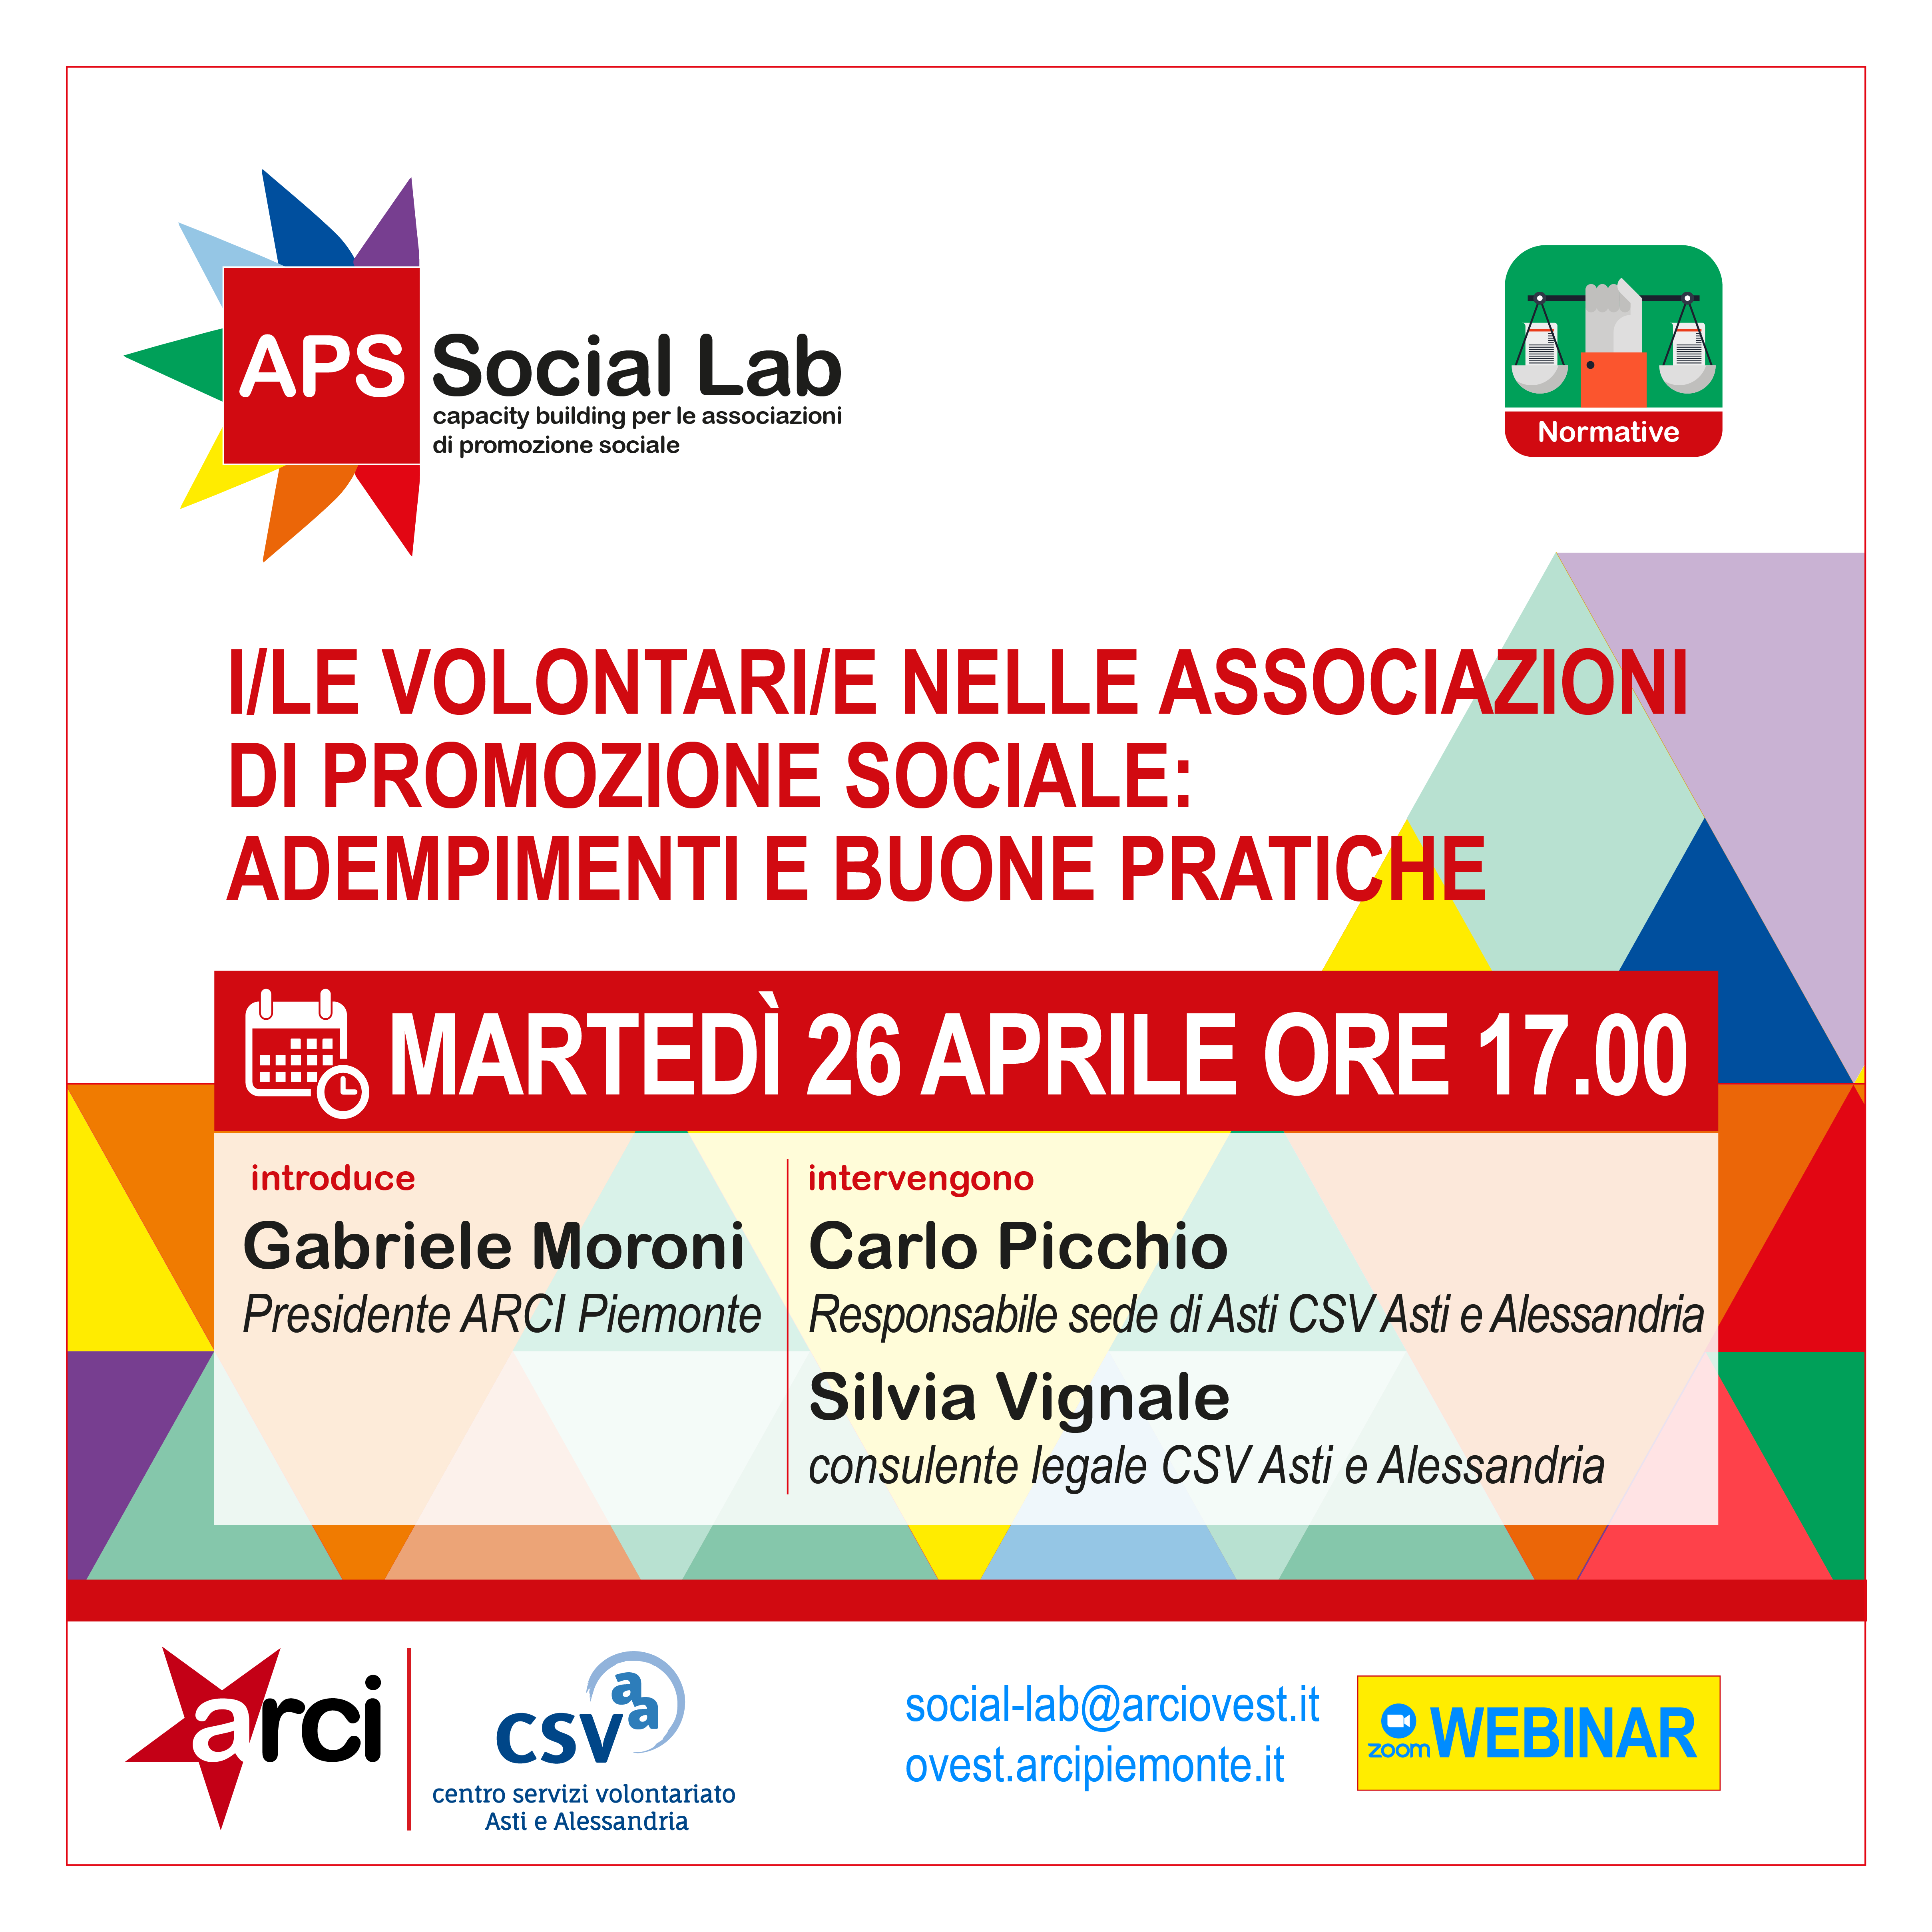 "I/le Volontari/e nelle associazioni di promozione sociale: adempimenti e buone pratiche" - webinar APS Social Lab